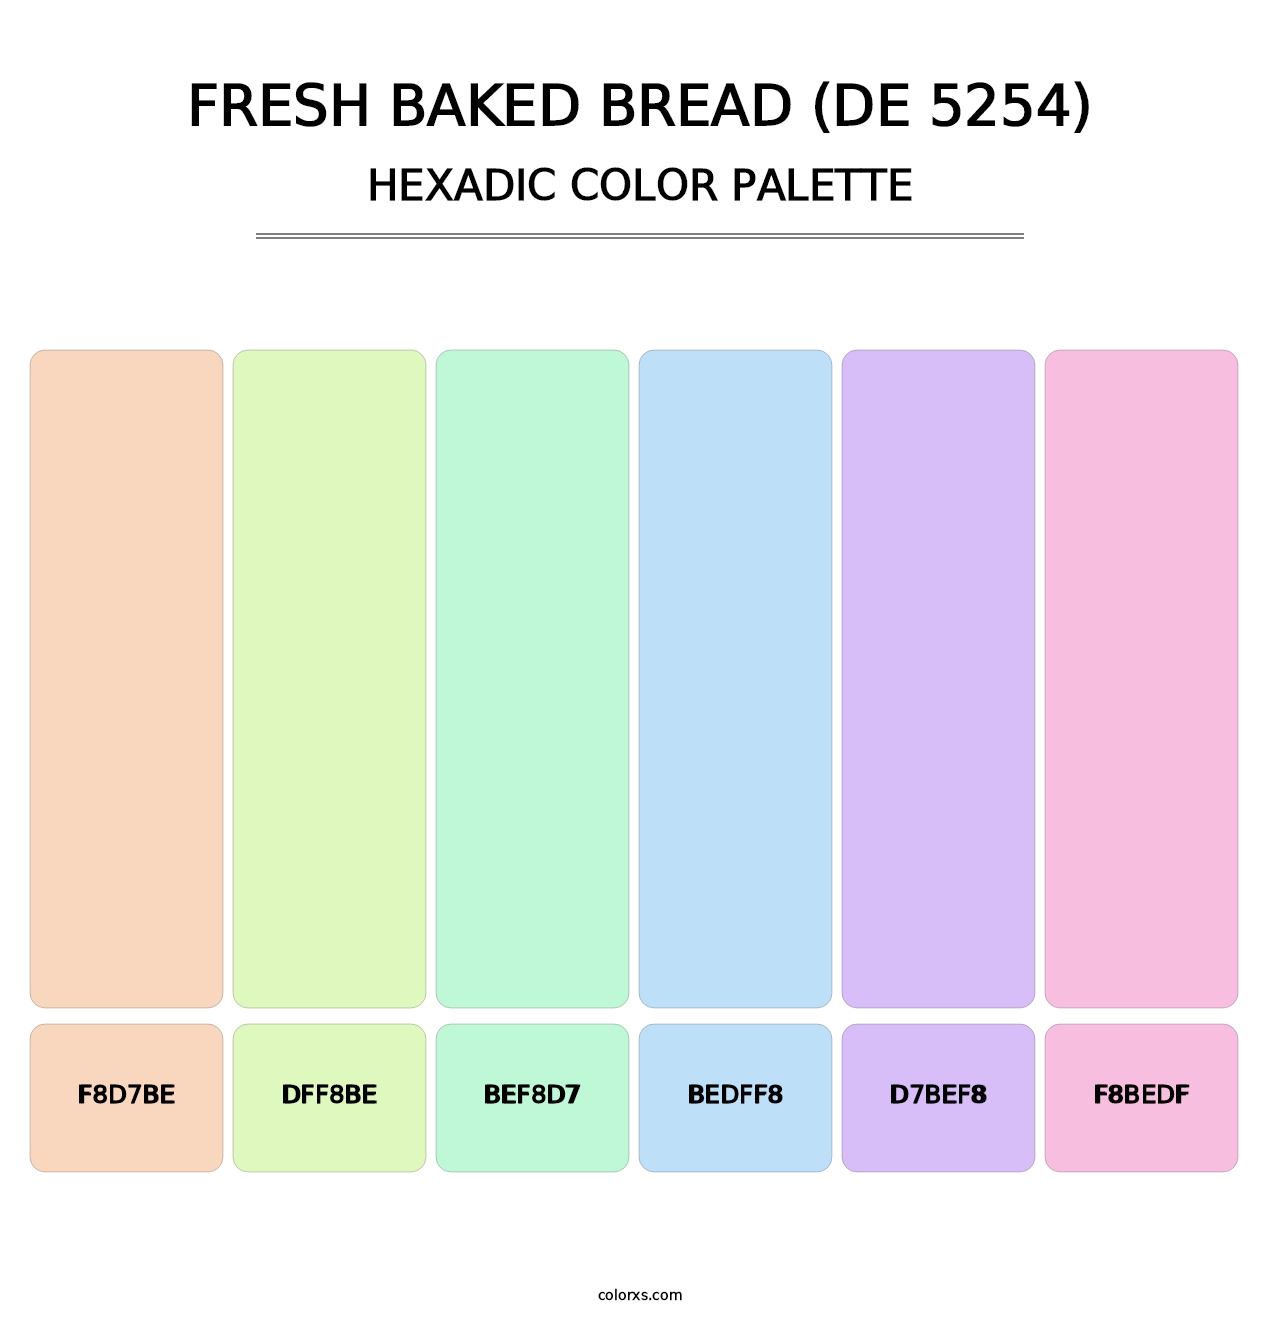 Fresh Baked Bread (DE 5254) - Hexadic Color Palette